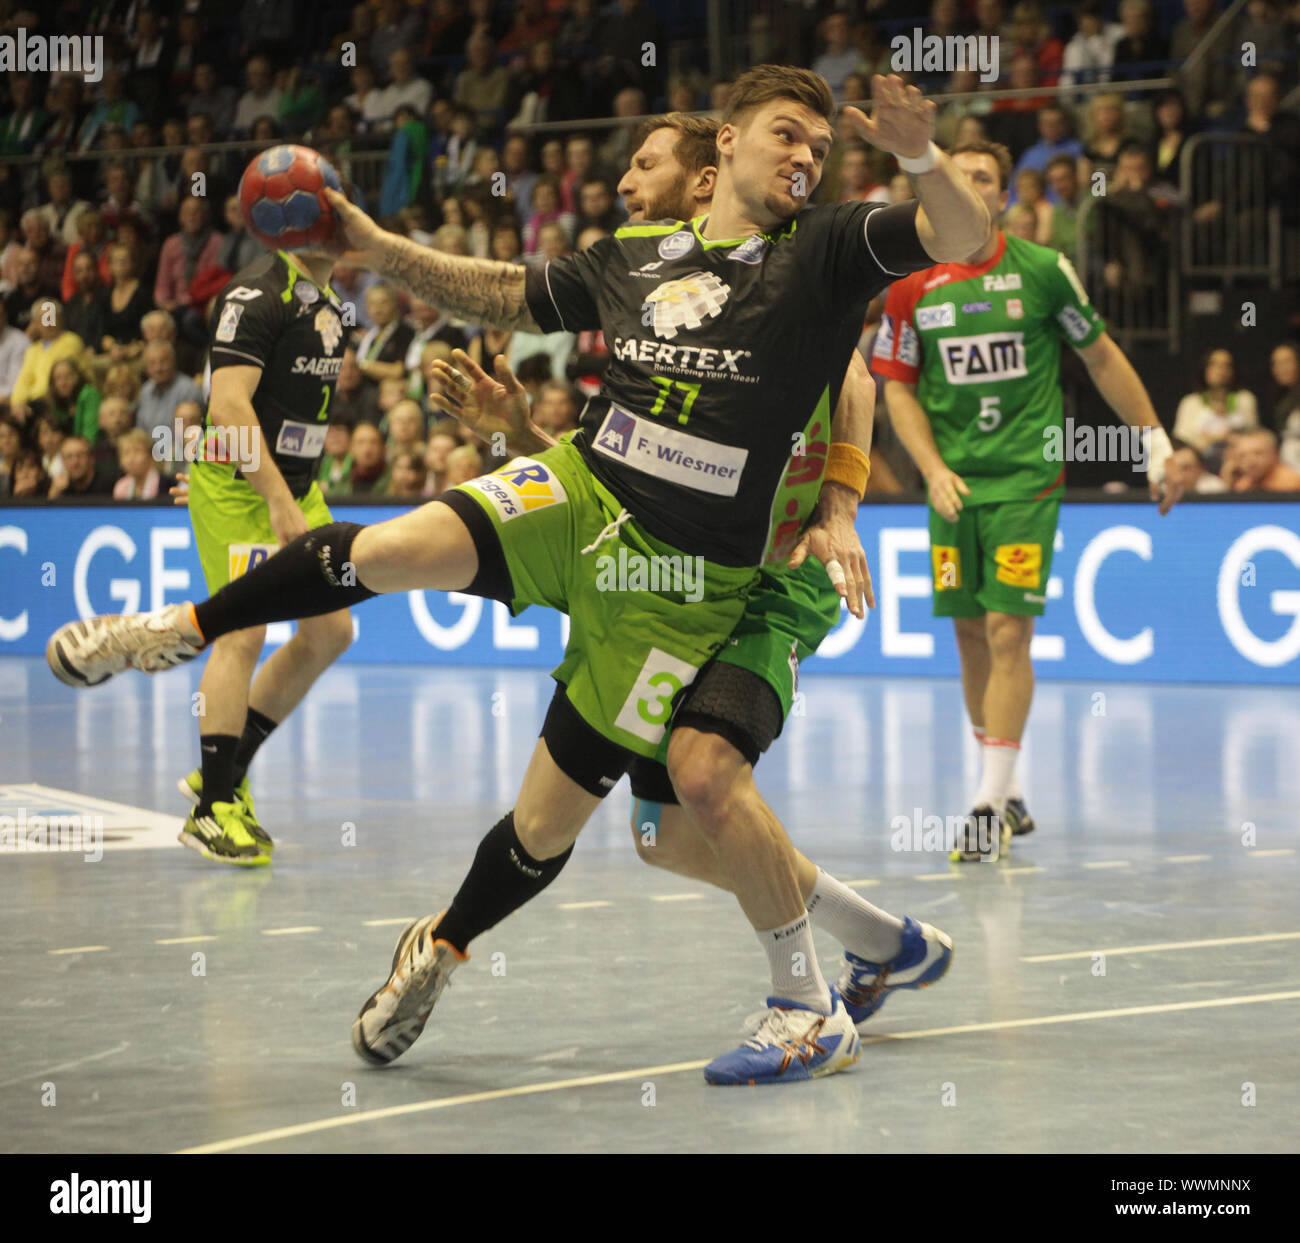 Handball bundesliga hi-res stock photography and images - Alamy